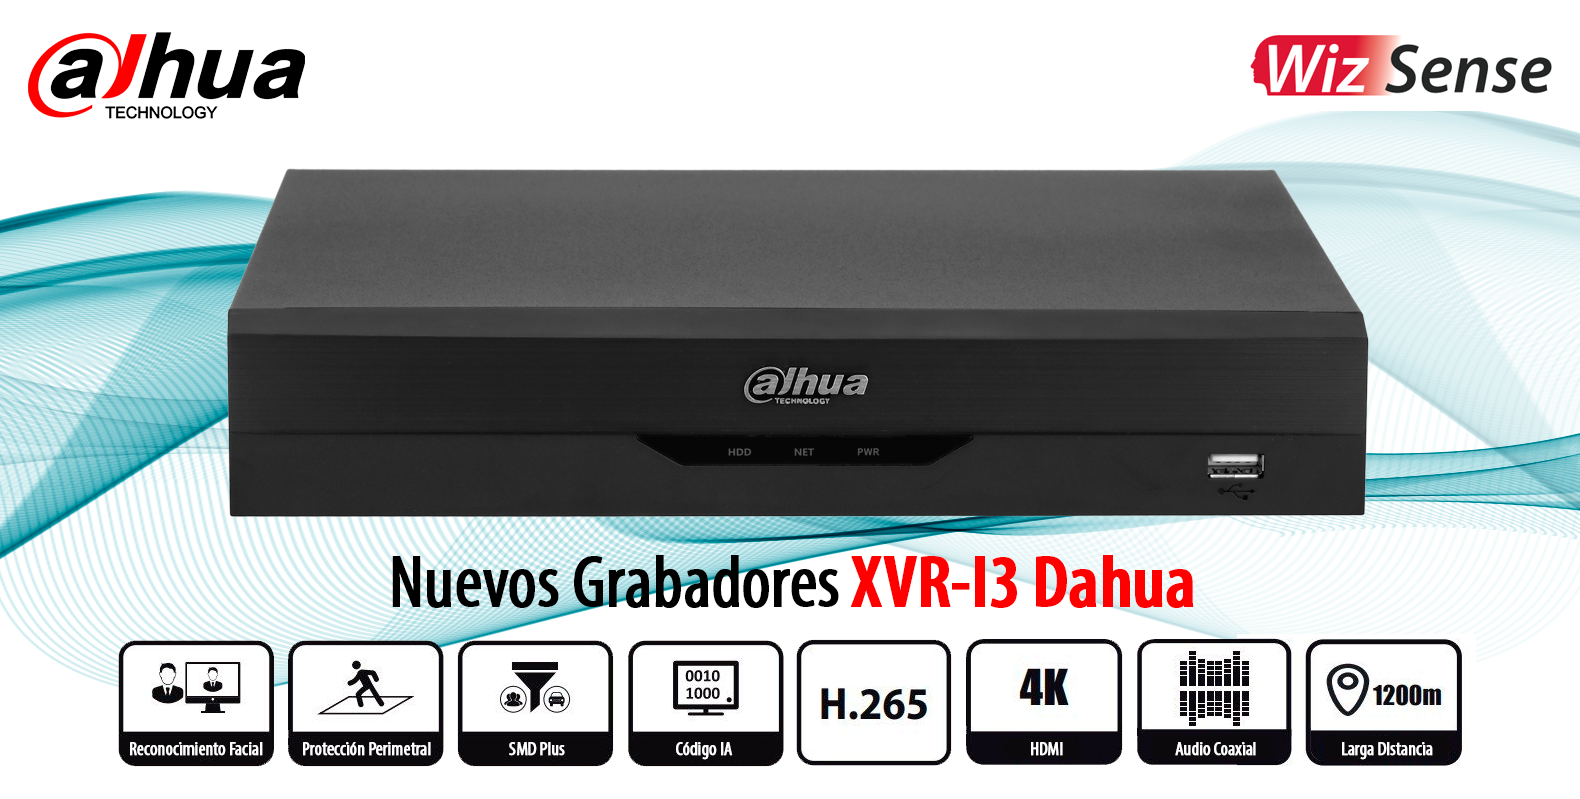 Nuevos Grabadores XVR-I3 de Dahua